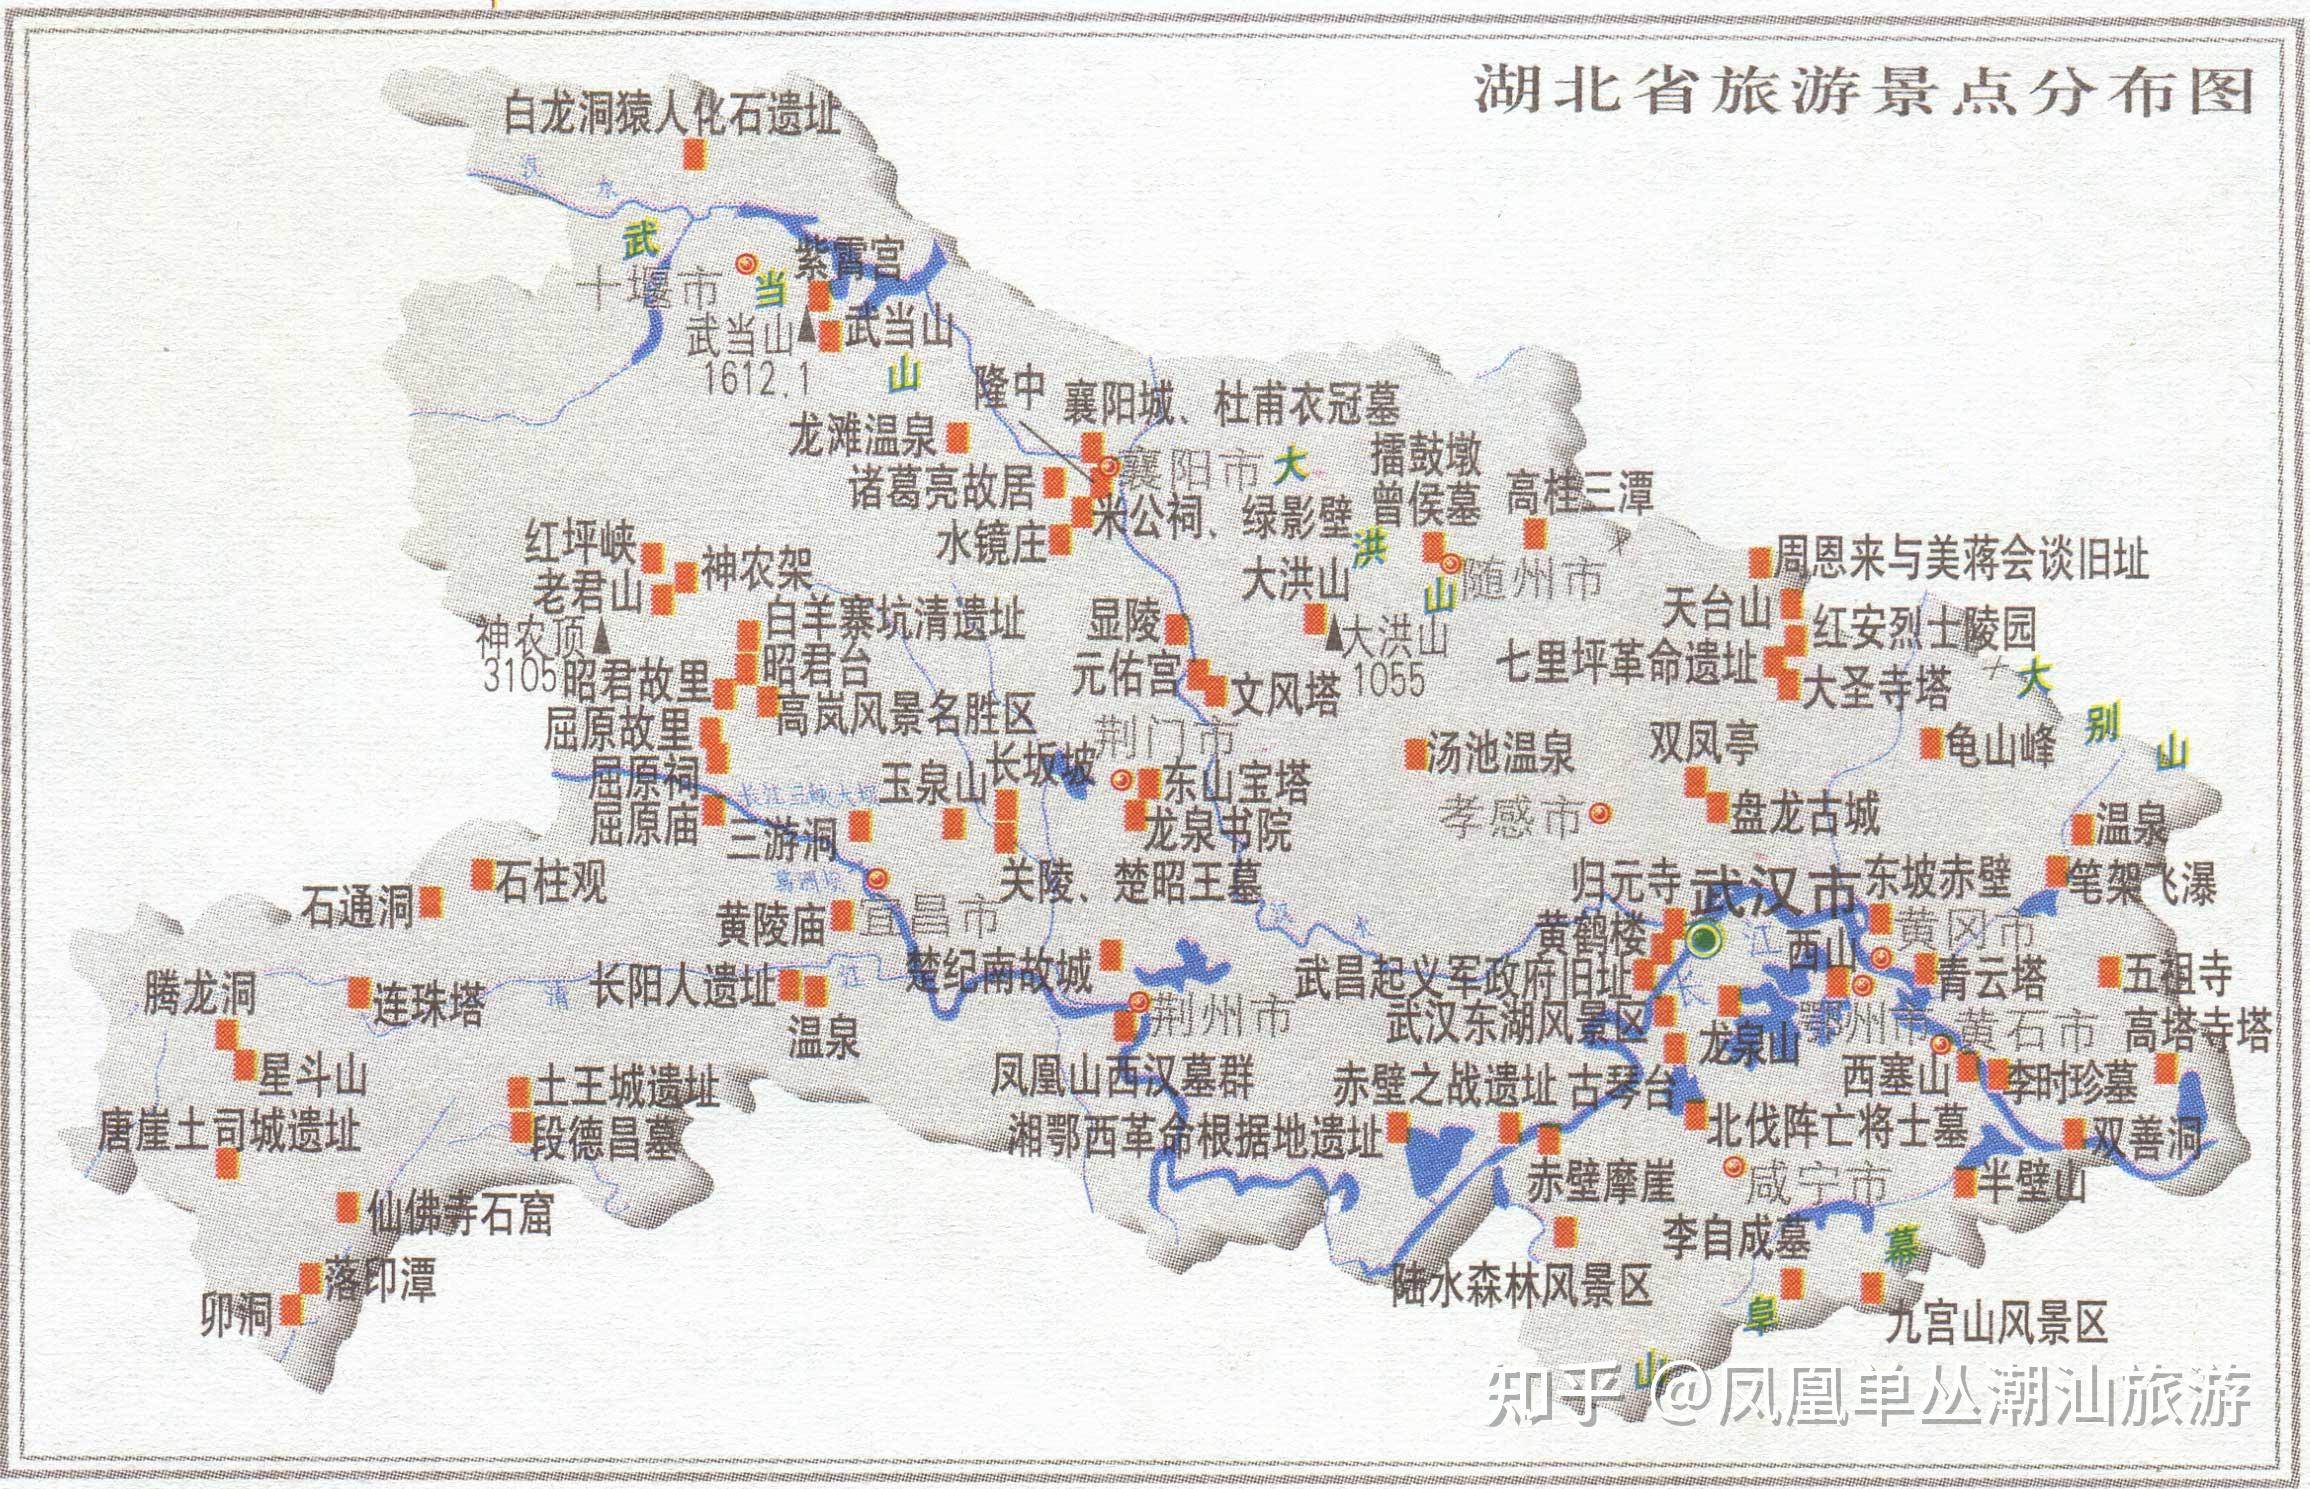 青海旅游景点分布图26,西藏旅游景点分布图27,四川旅游景点分布图28